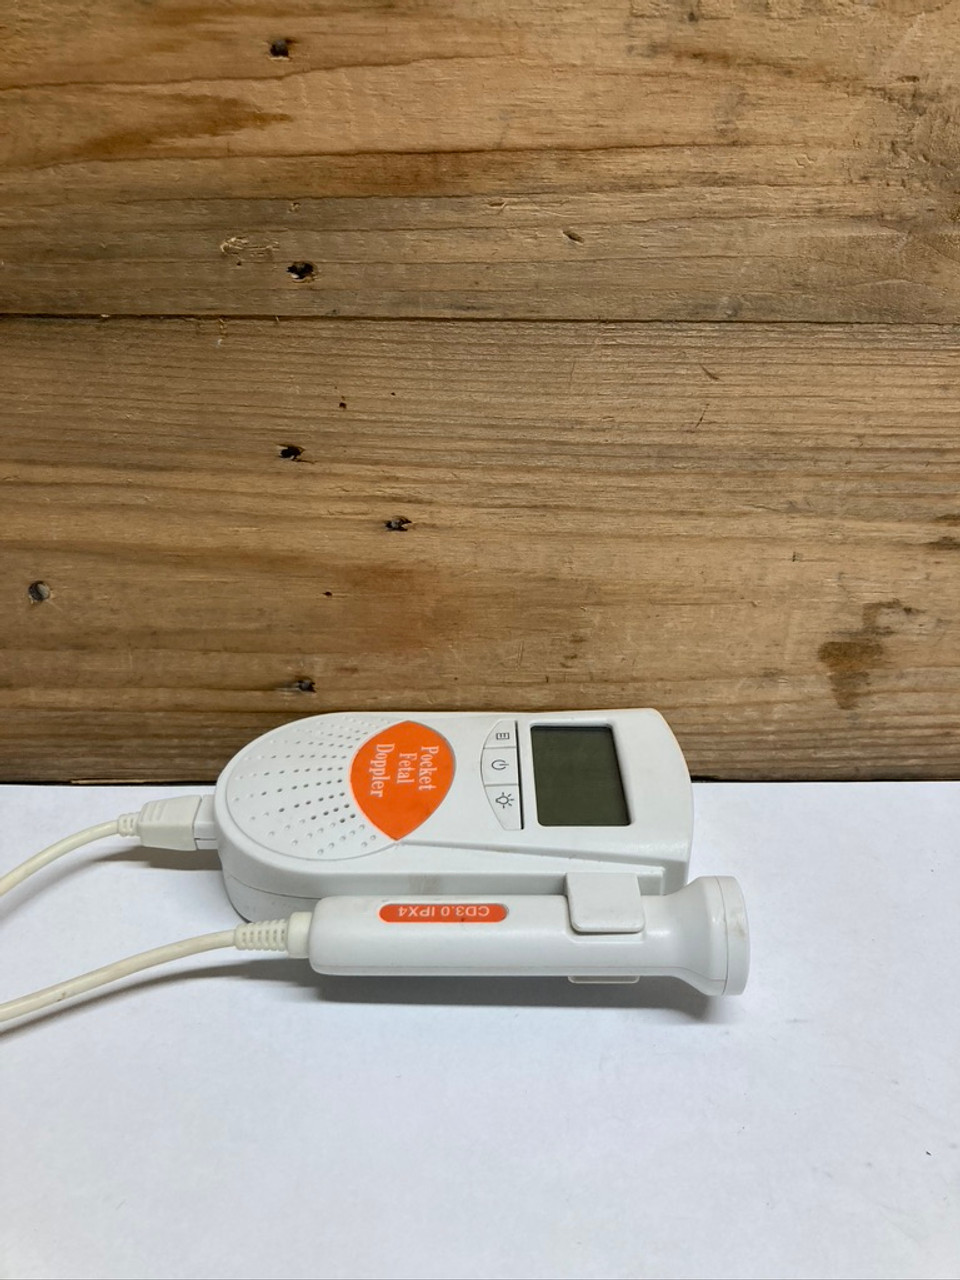 Sonoline B Fetal Doppler® {Pocket, Handheld, & Portable}